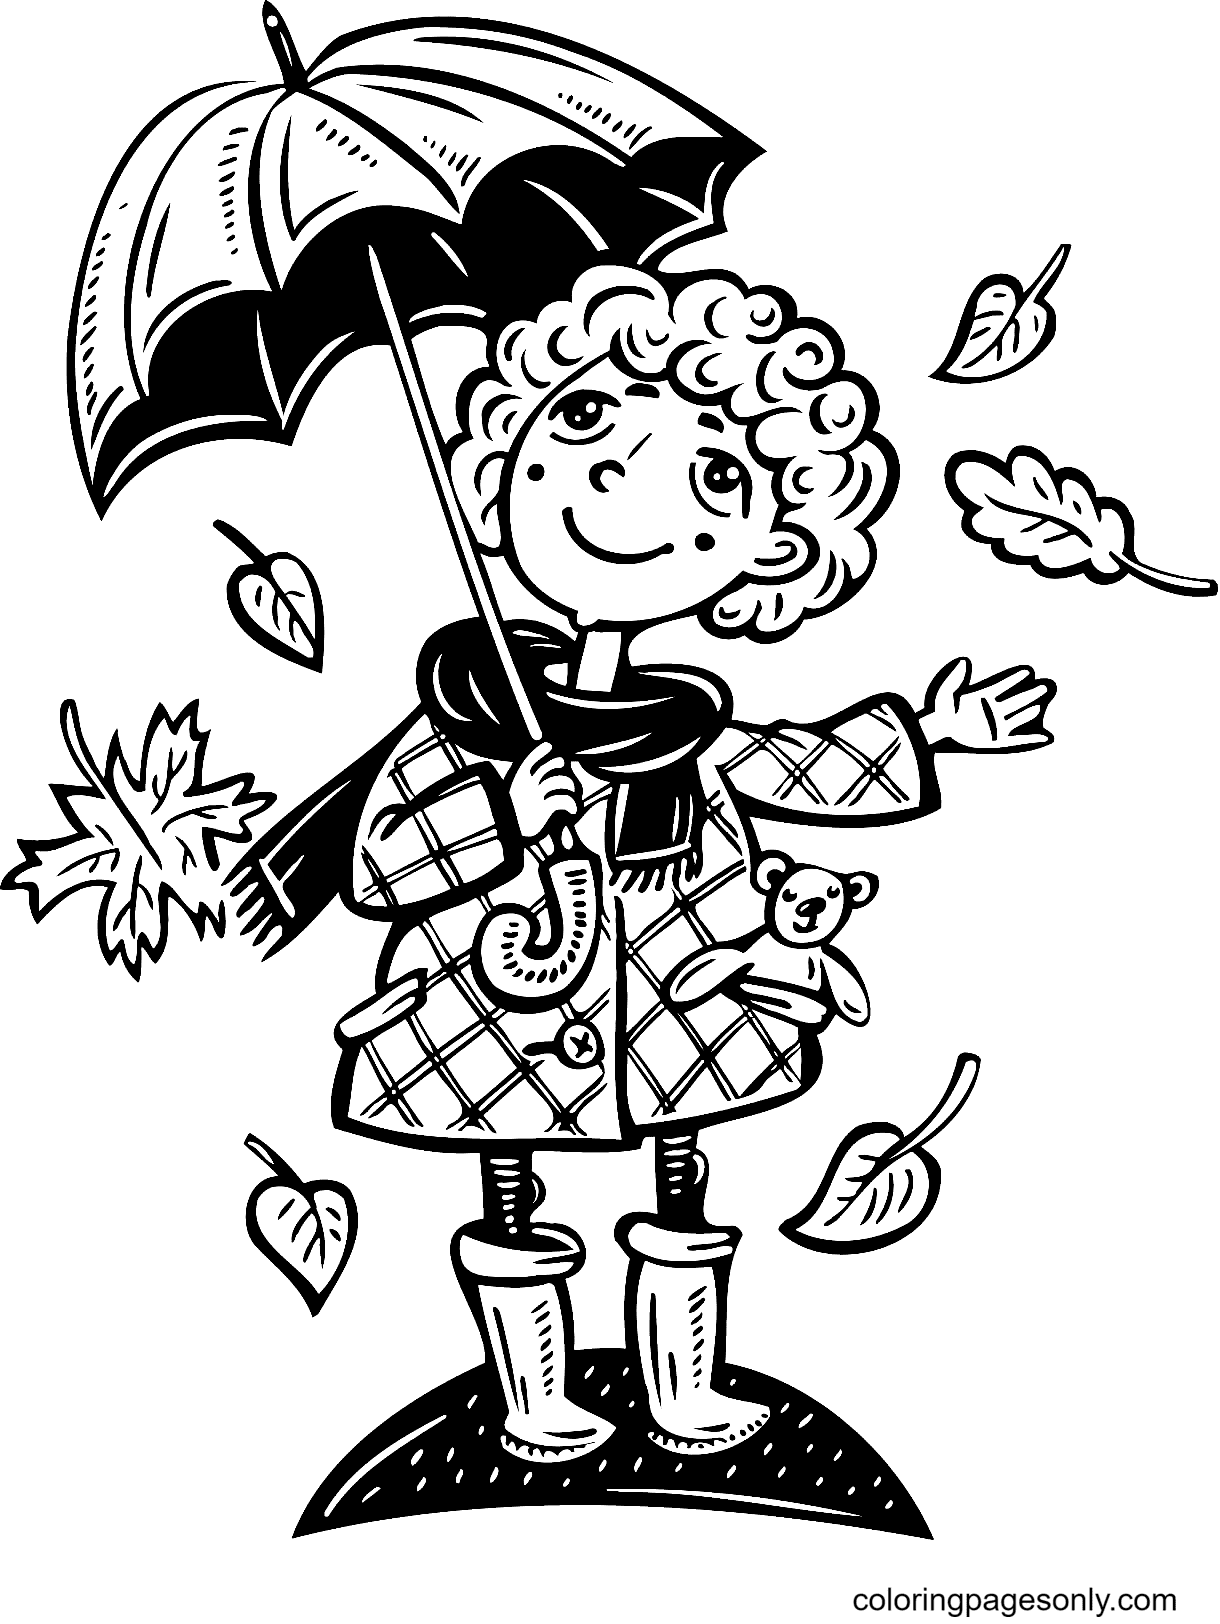 Девушка держит зонтик с опавшими осенними листьями